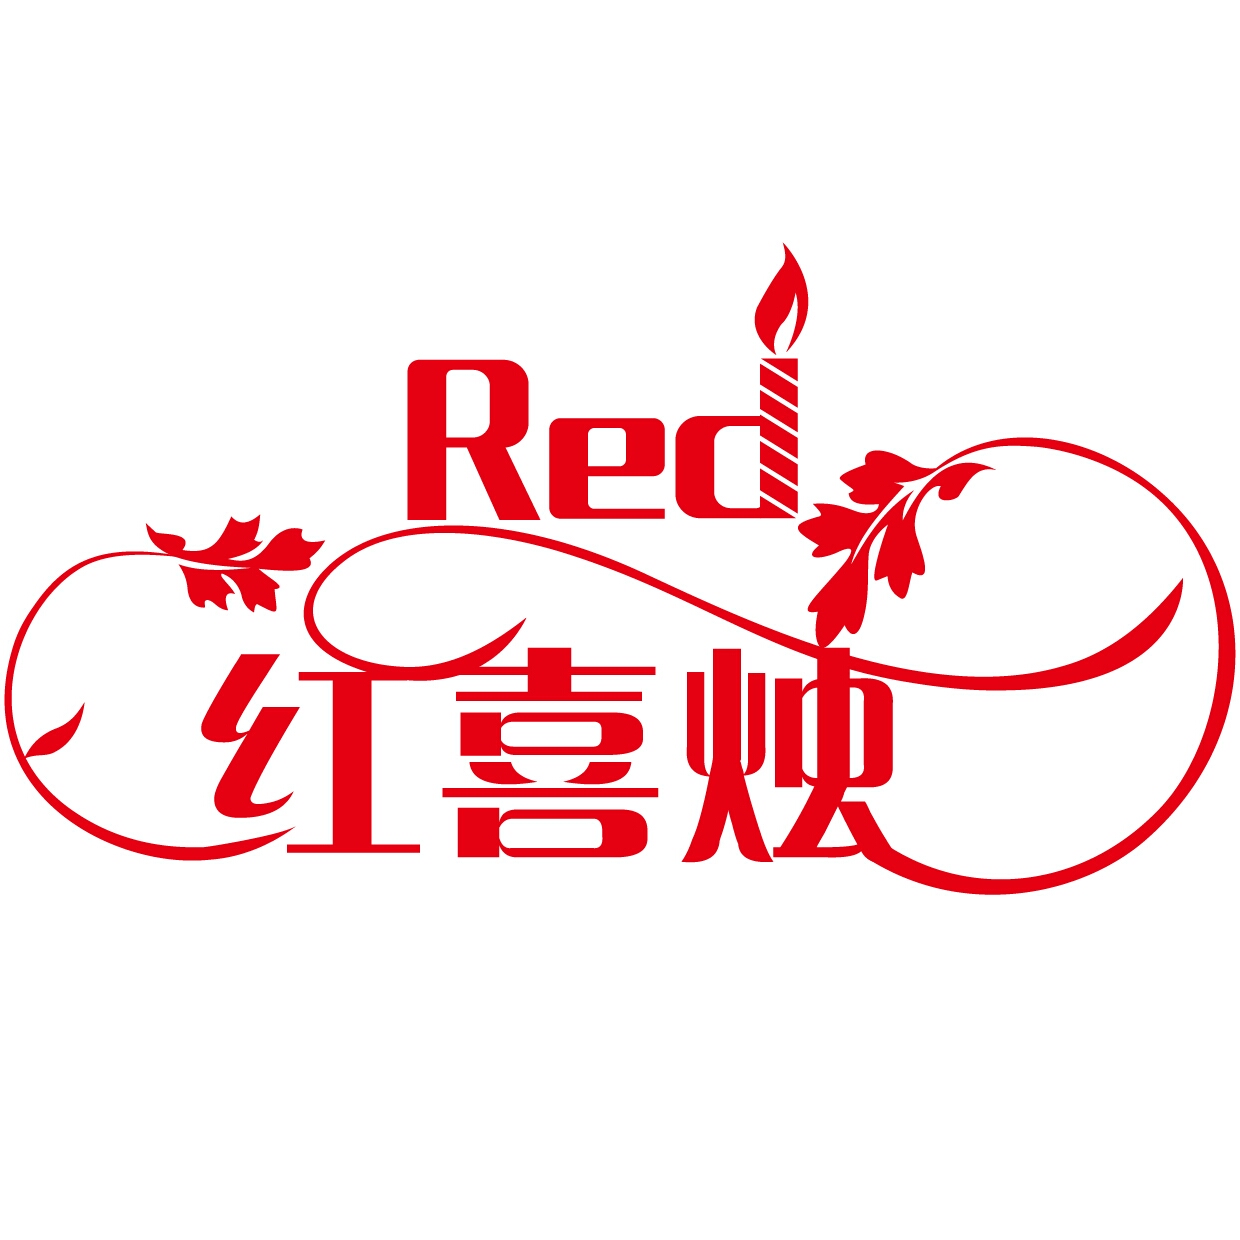 Red红喜烛婚礼会馆